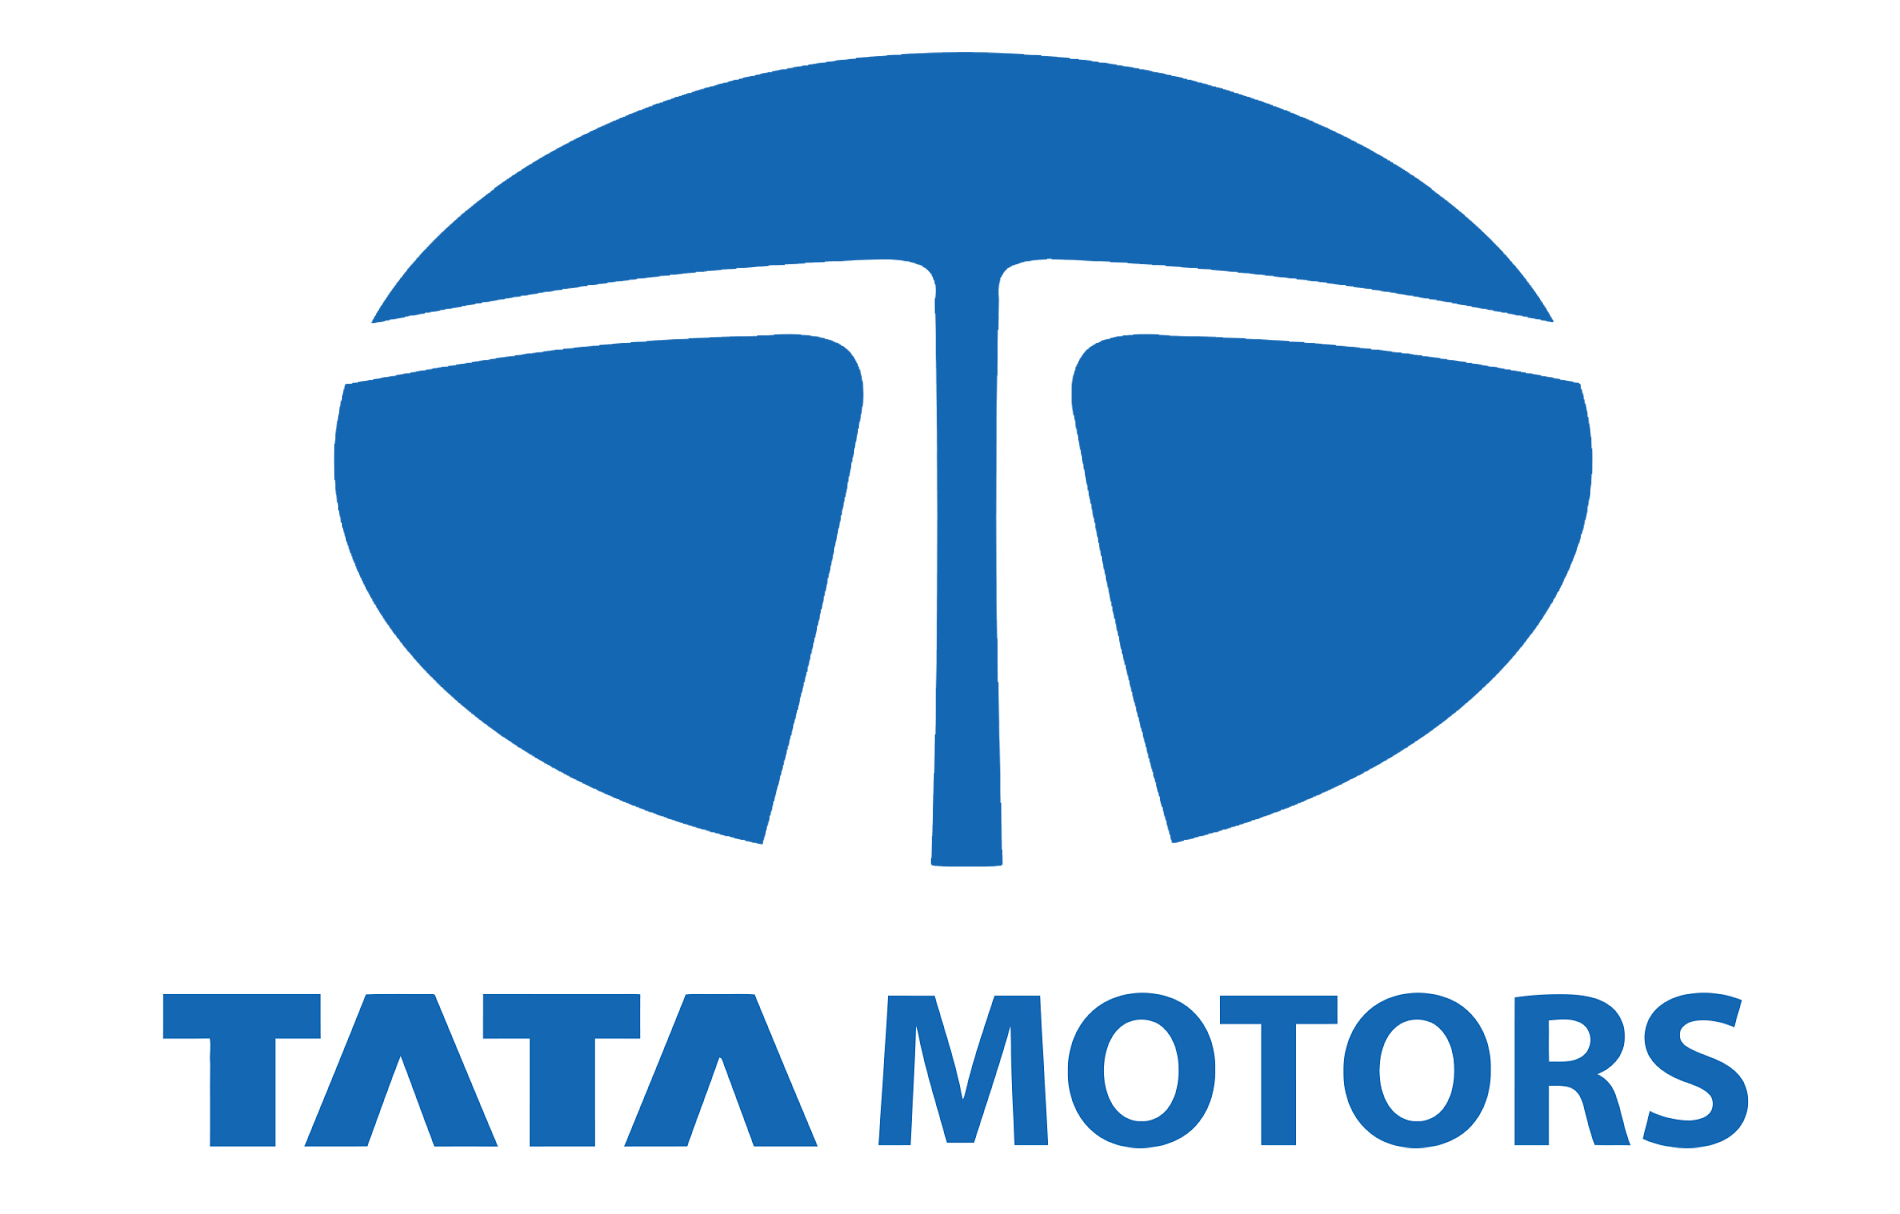 Tata Motors Cars Showroom - Shreeji Automart Pvt Ltd - Logo